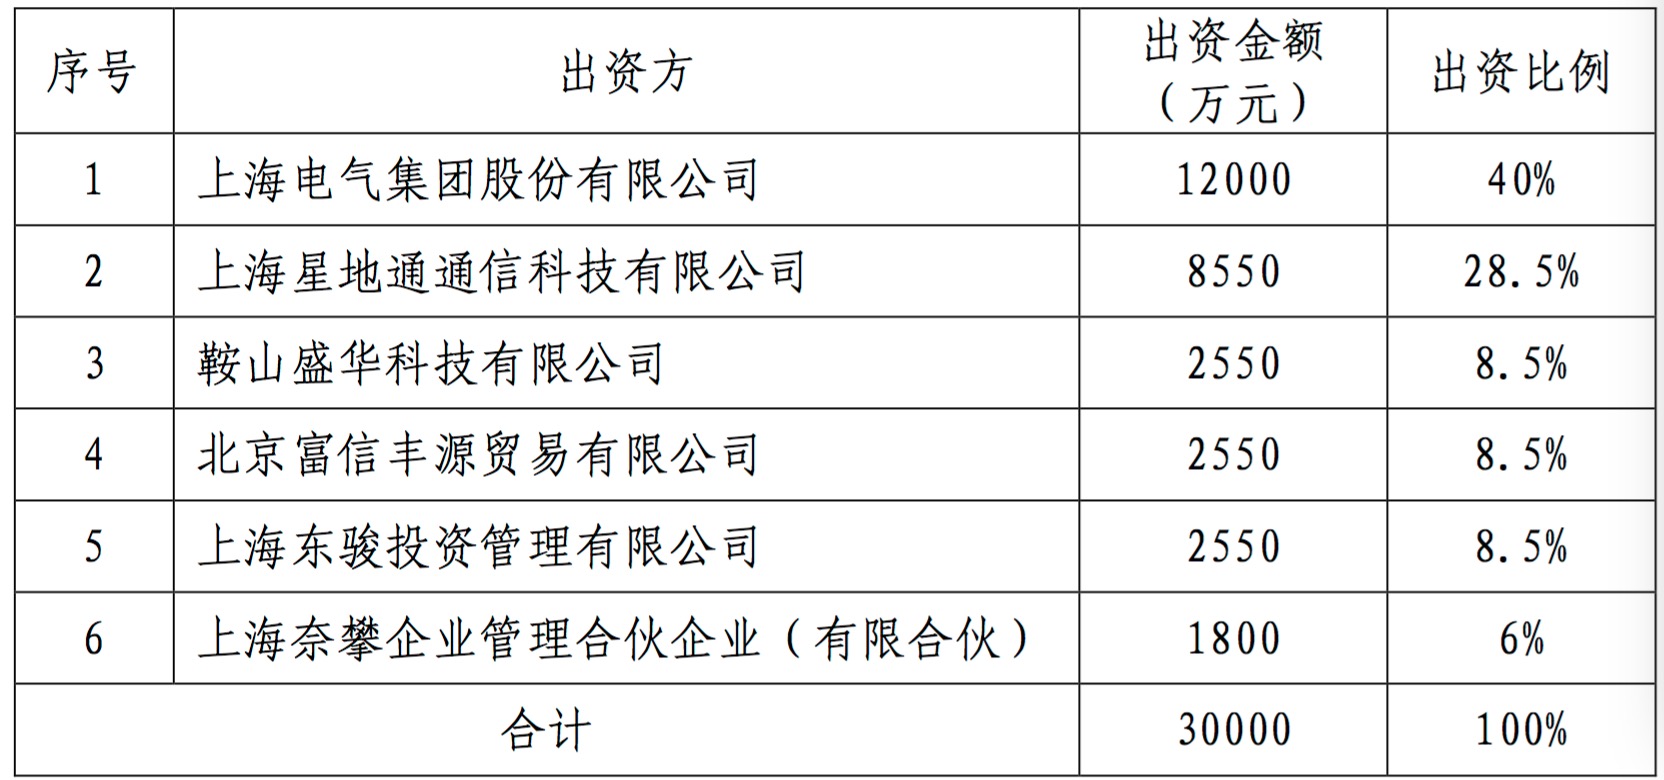 上海电气跌停：通讯子公司应收账款普遍逾期或致83亿元巨亏